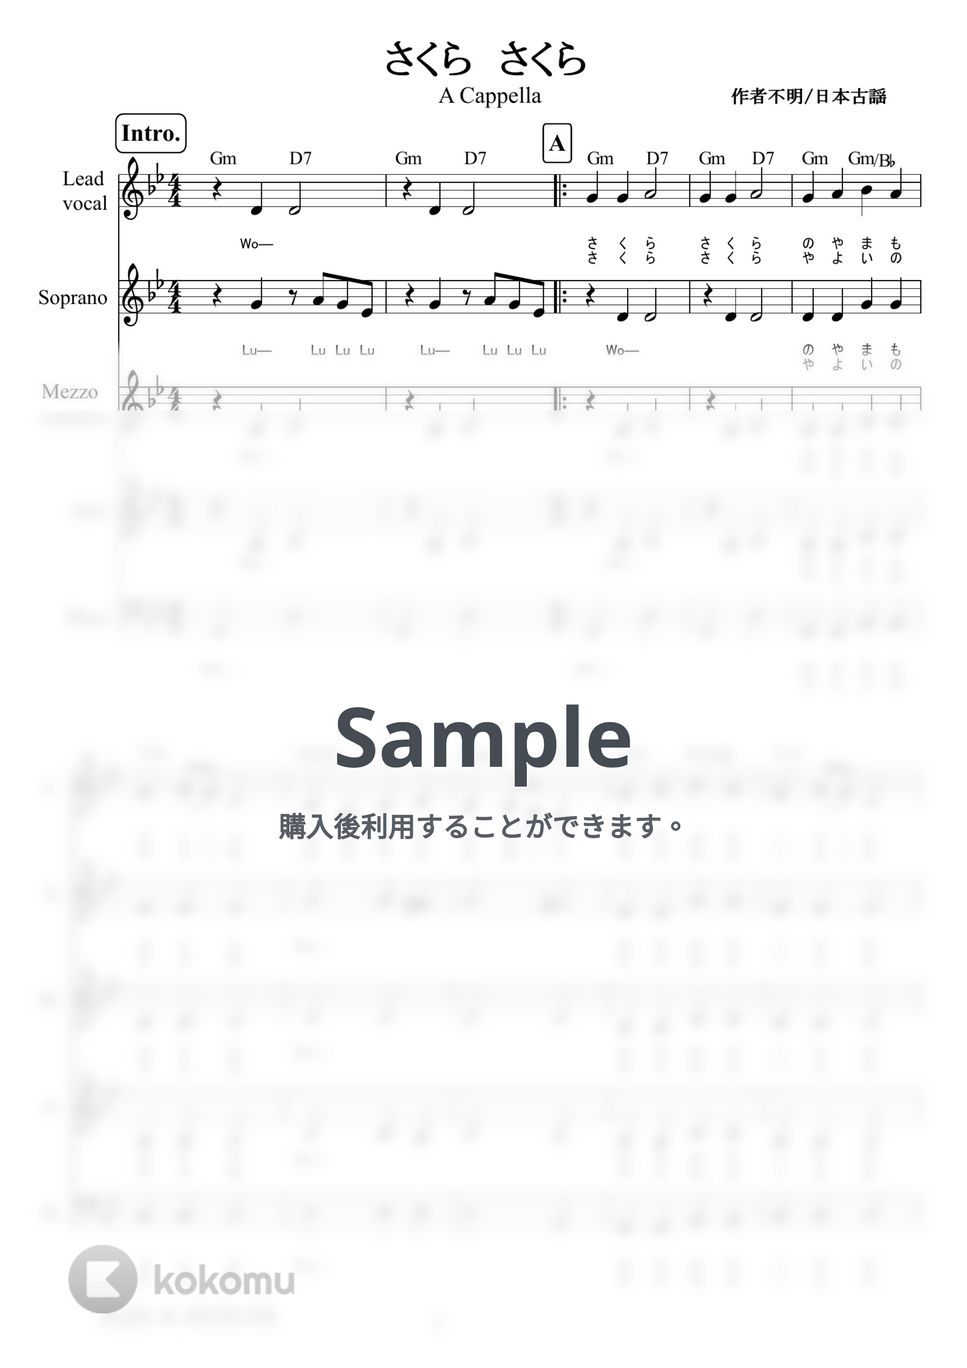 さくらさくら (アカペラ楽譜♪５声ボイパなし) by 飯田 亜紗子